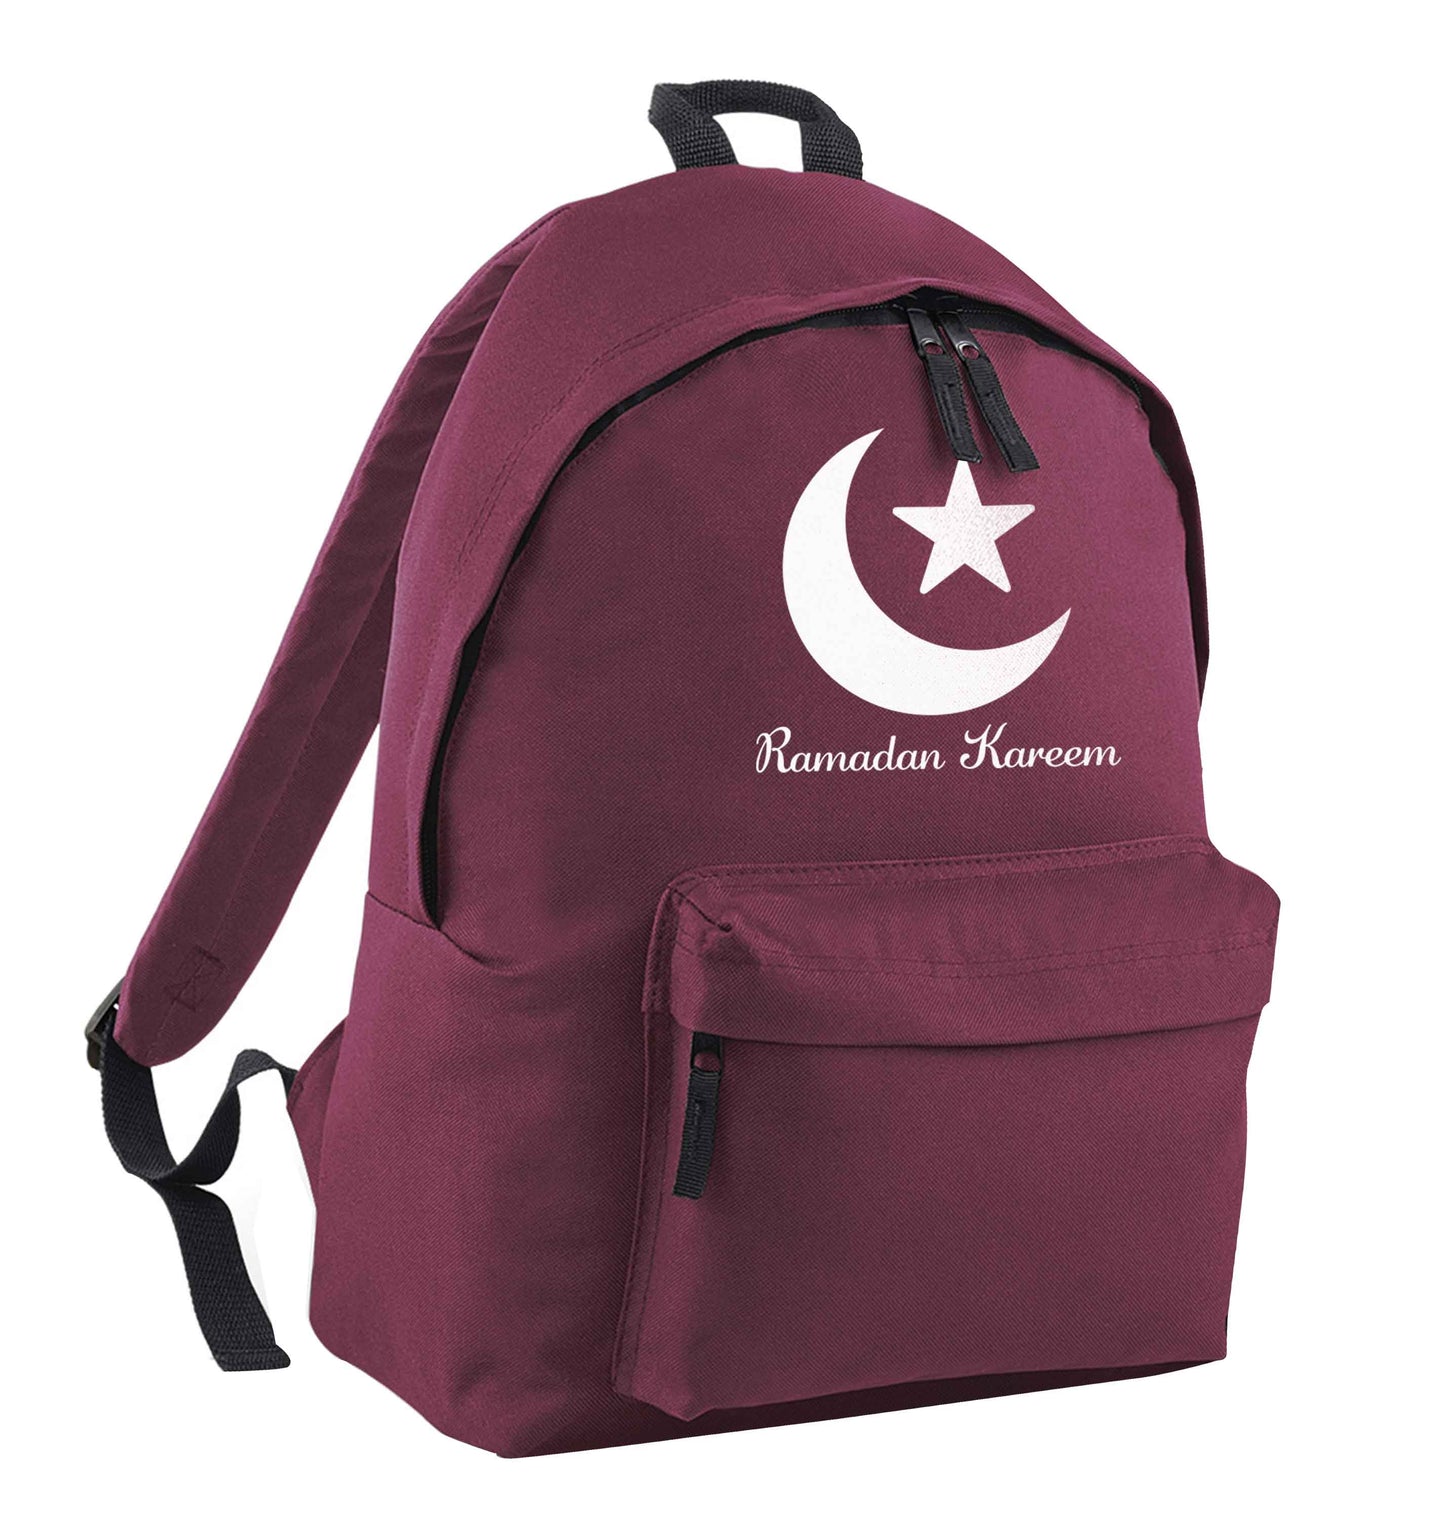 Ramadan kareem maroon adults backpack